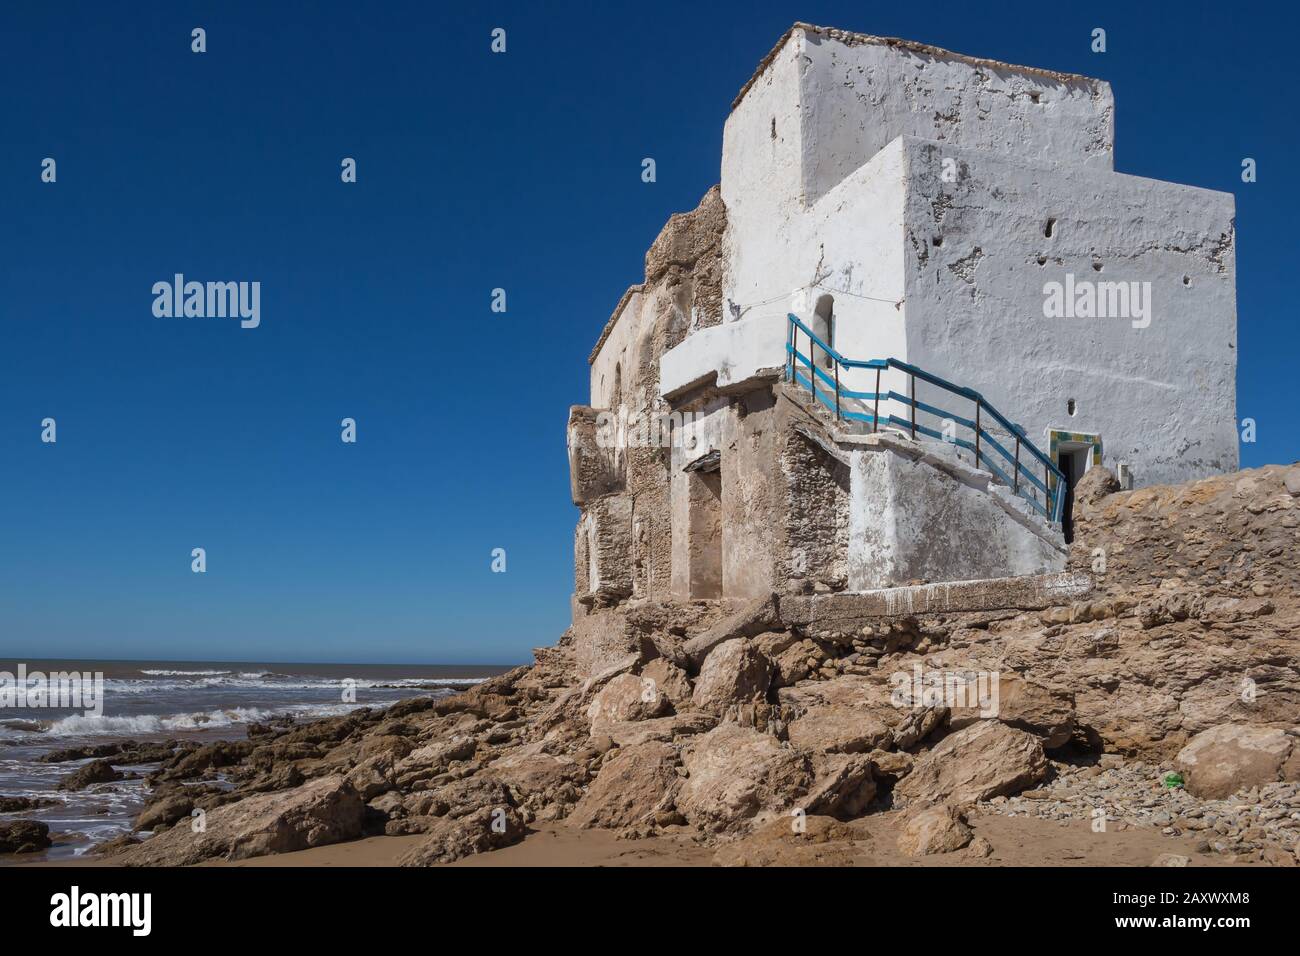 Edificio bianco abbandonato, costruito sulle rocce sulla costa dell'Oceano Atlantico. Cielo blu brillante. Sidi Kaouki, Marocco. Foto Stock